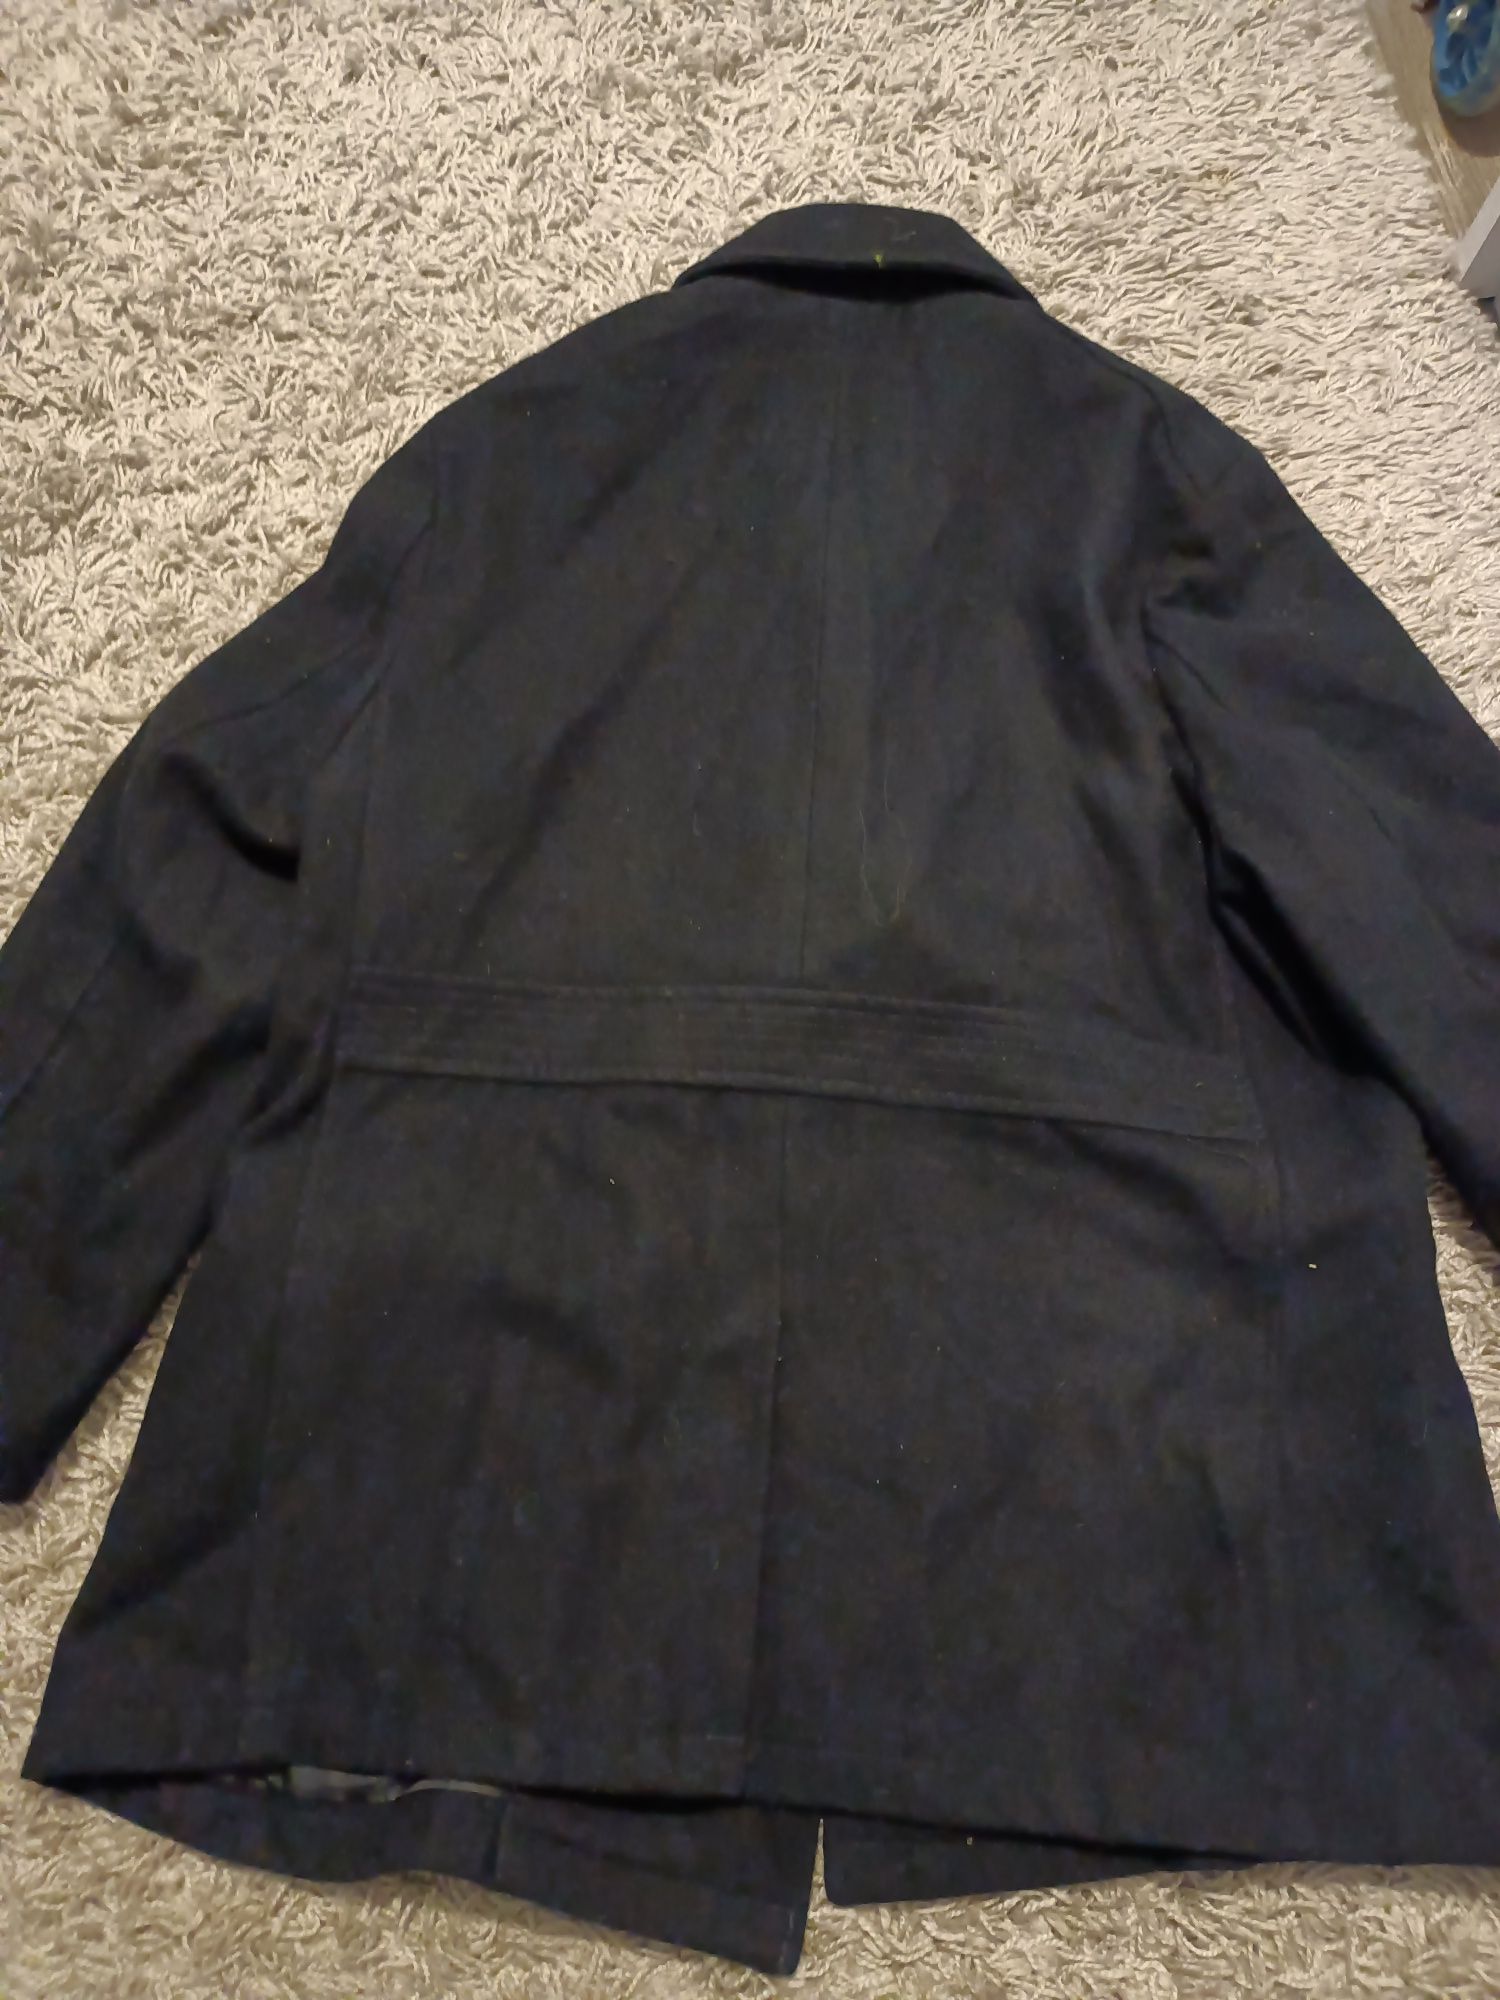 Easy płaszcz damski czarny XL płaszczyk kurtka